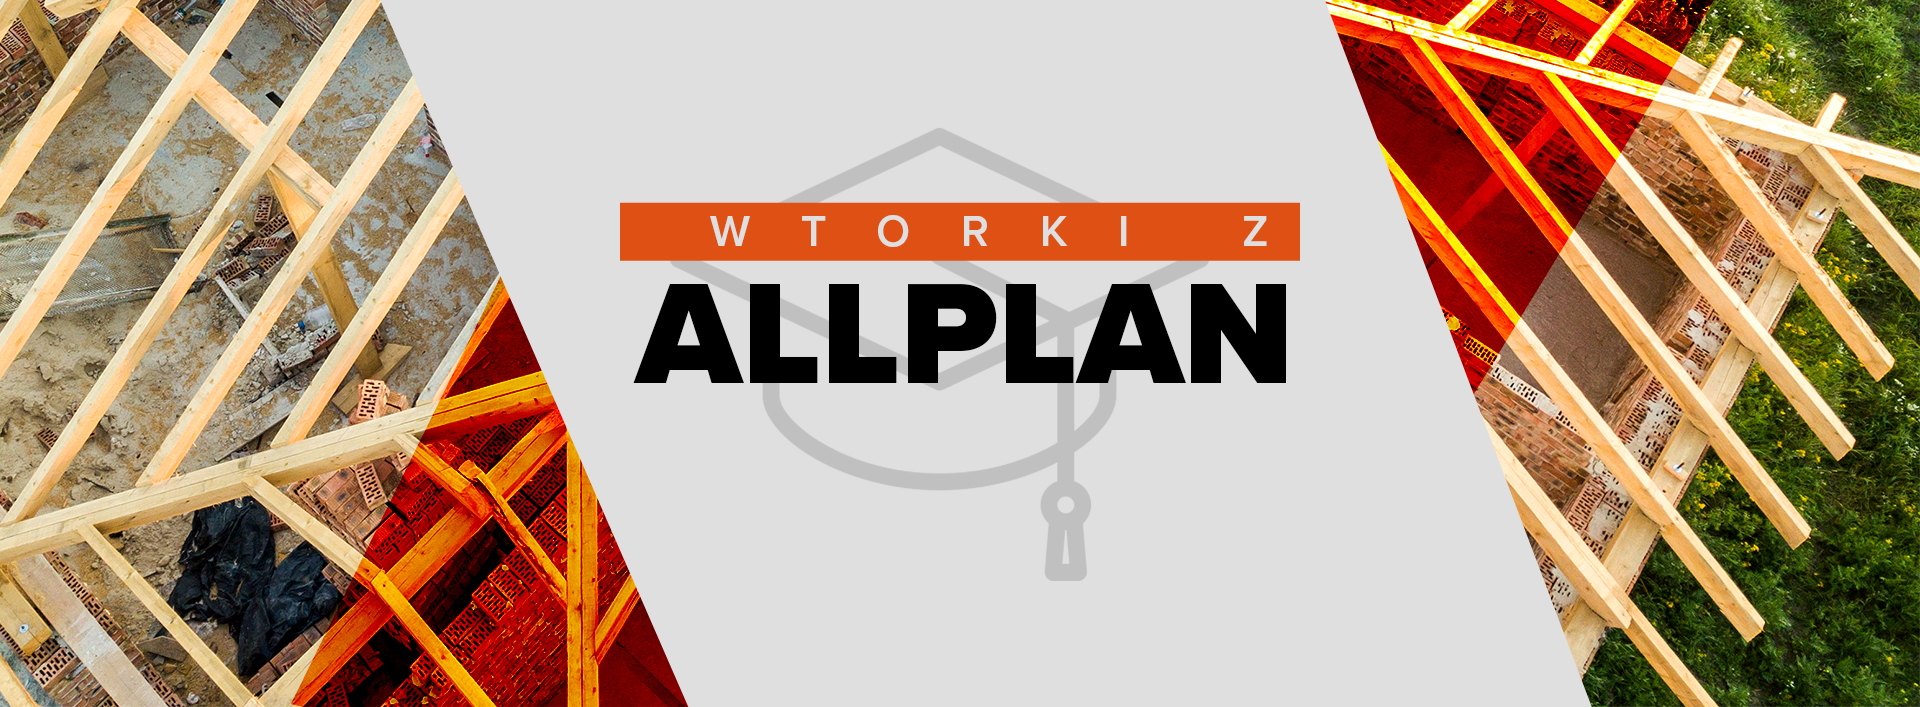 Nie przegap webinarium z serii „Wtorki z Allplanem”, które odbędzie się 18 czerwca o godzinie 11.00